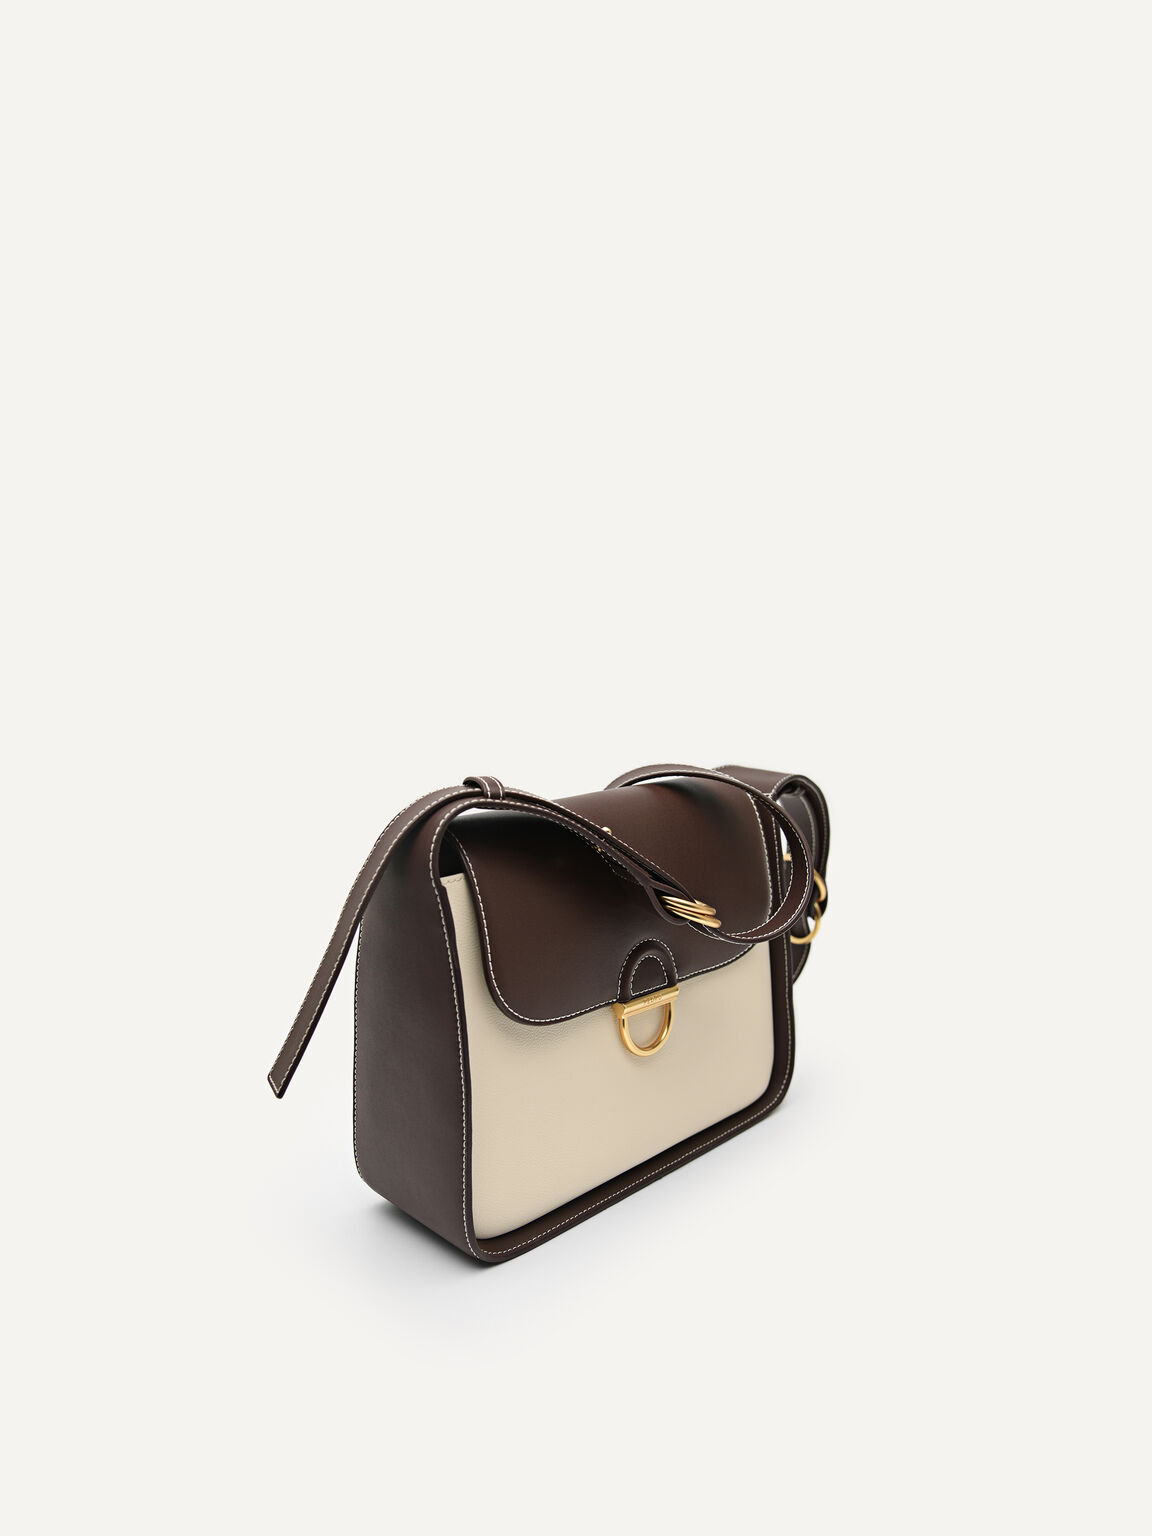 Jean Leather Satchel Bag, Multi